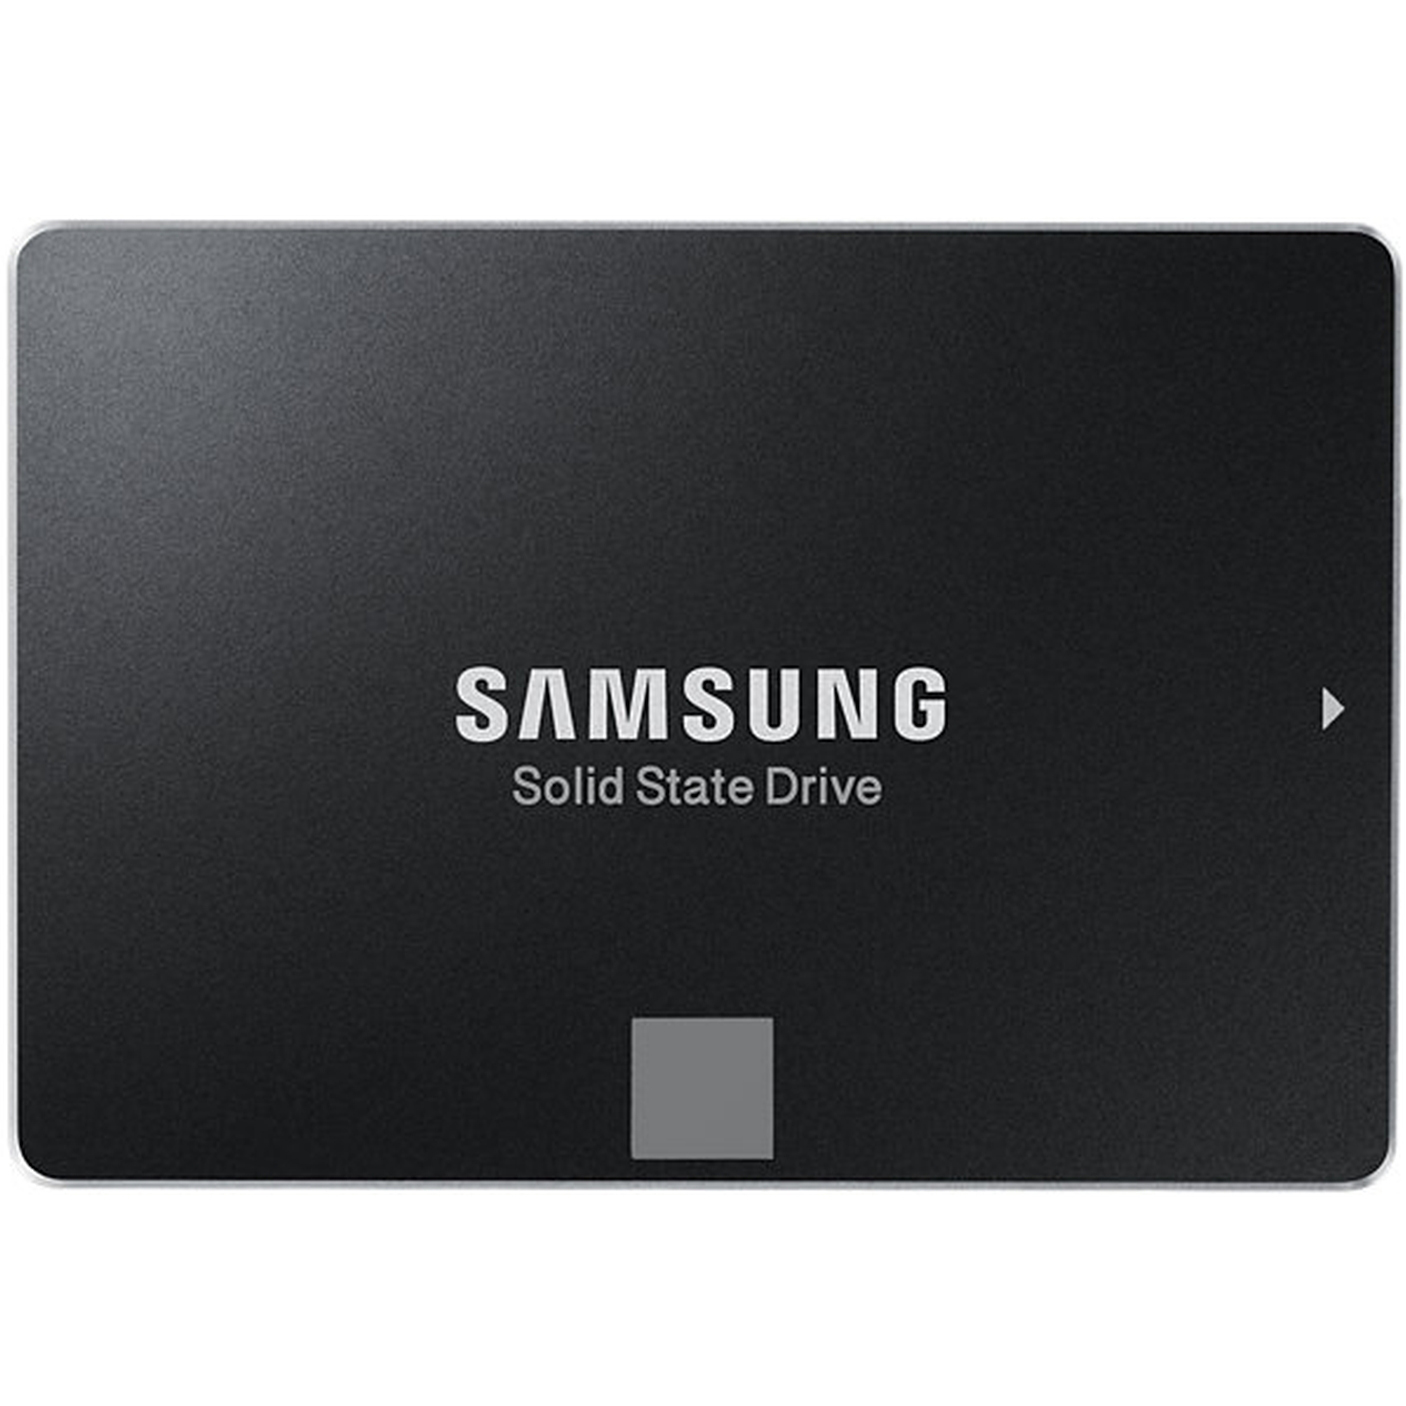 SSD Samsung 850 EVO 250GB SATA3, 540/520 MBs